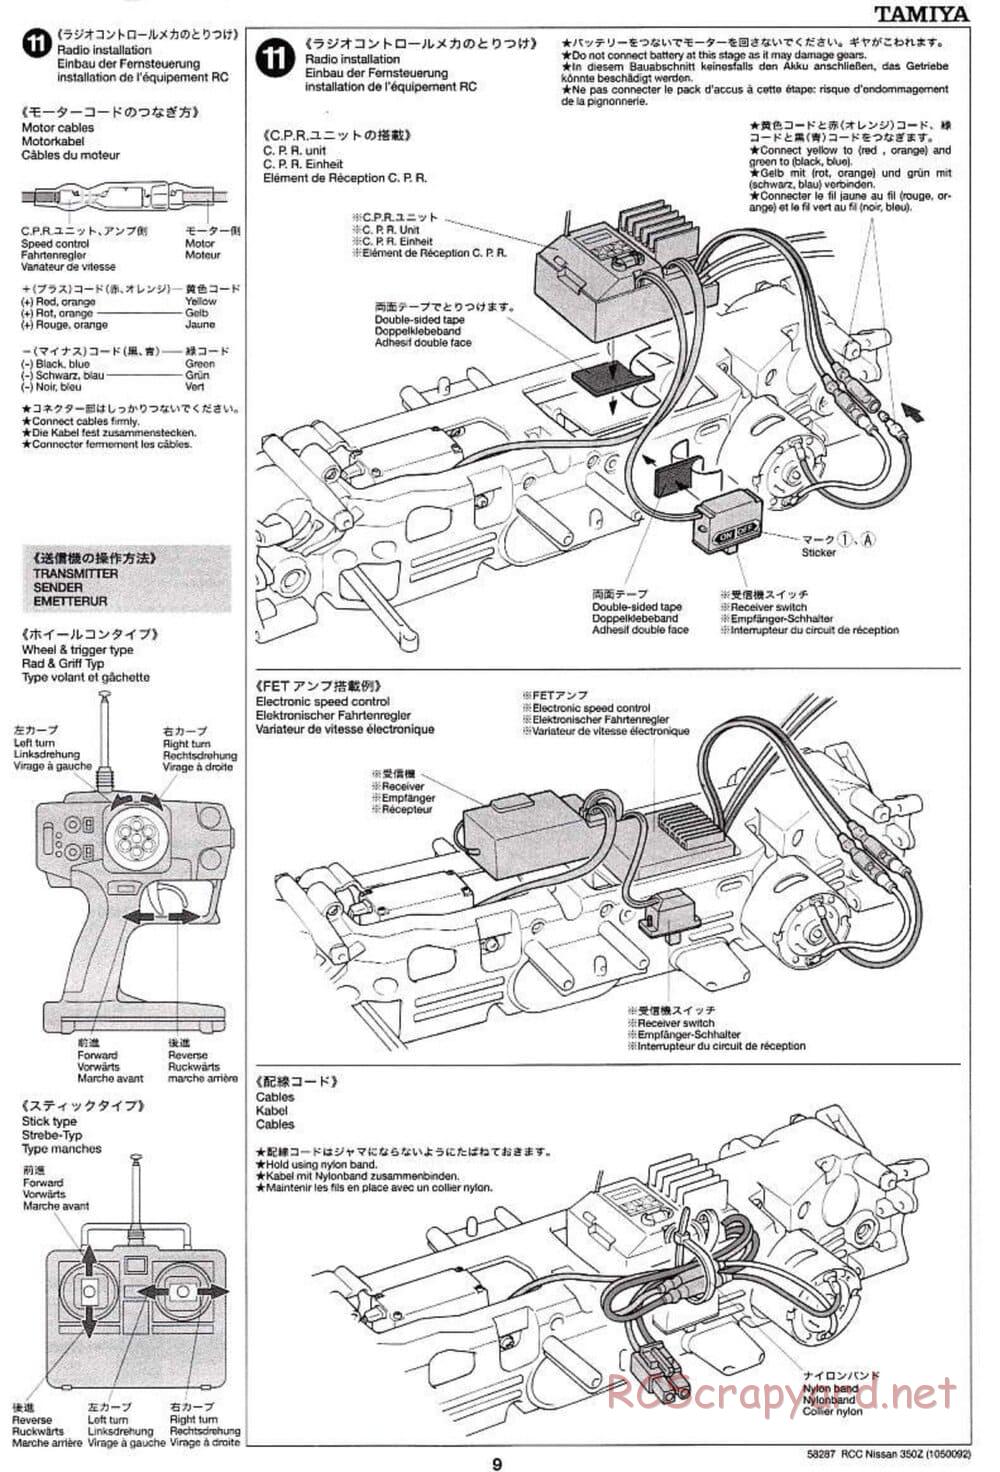 Tamiya - Nissan 350Z - TL-01 Chassis - Manual - Page 9